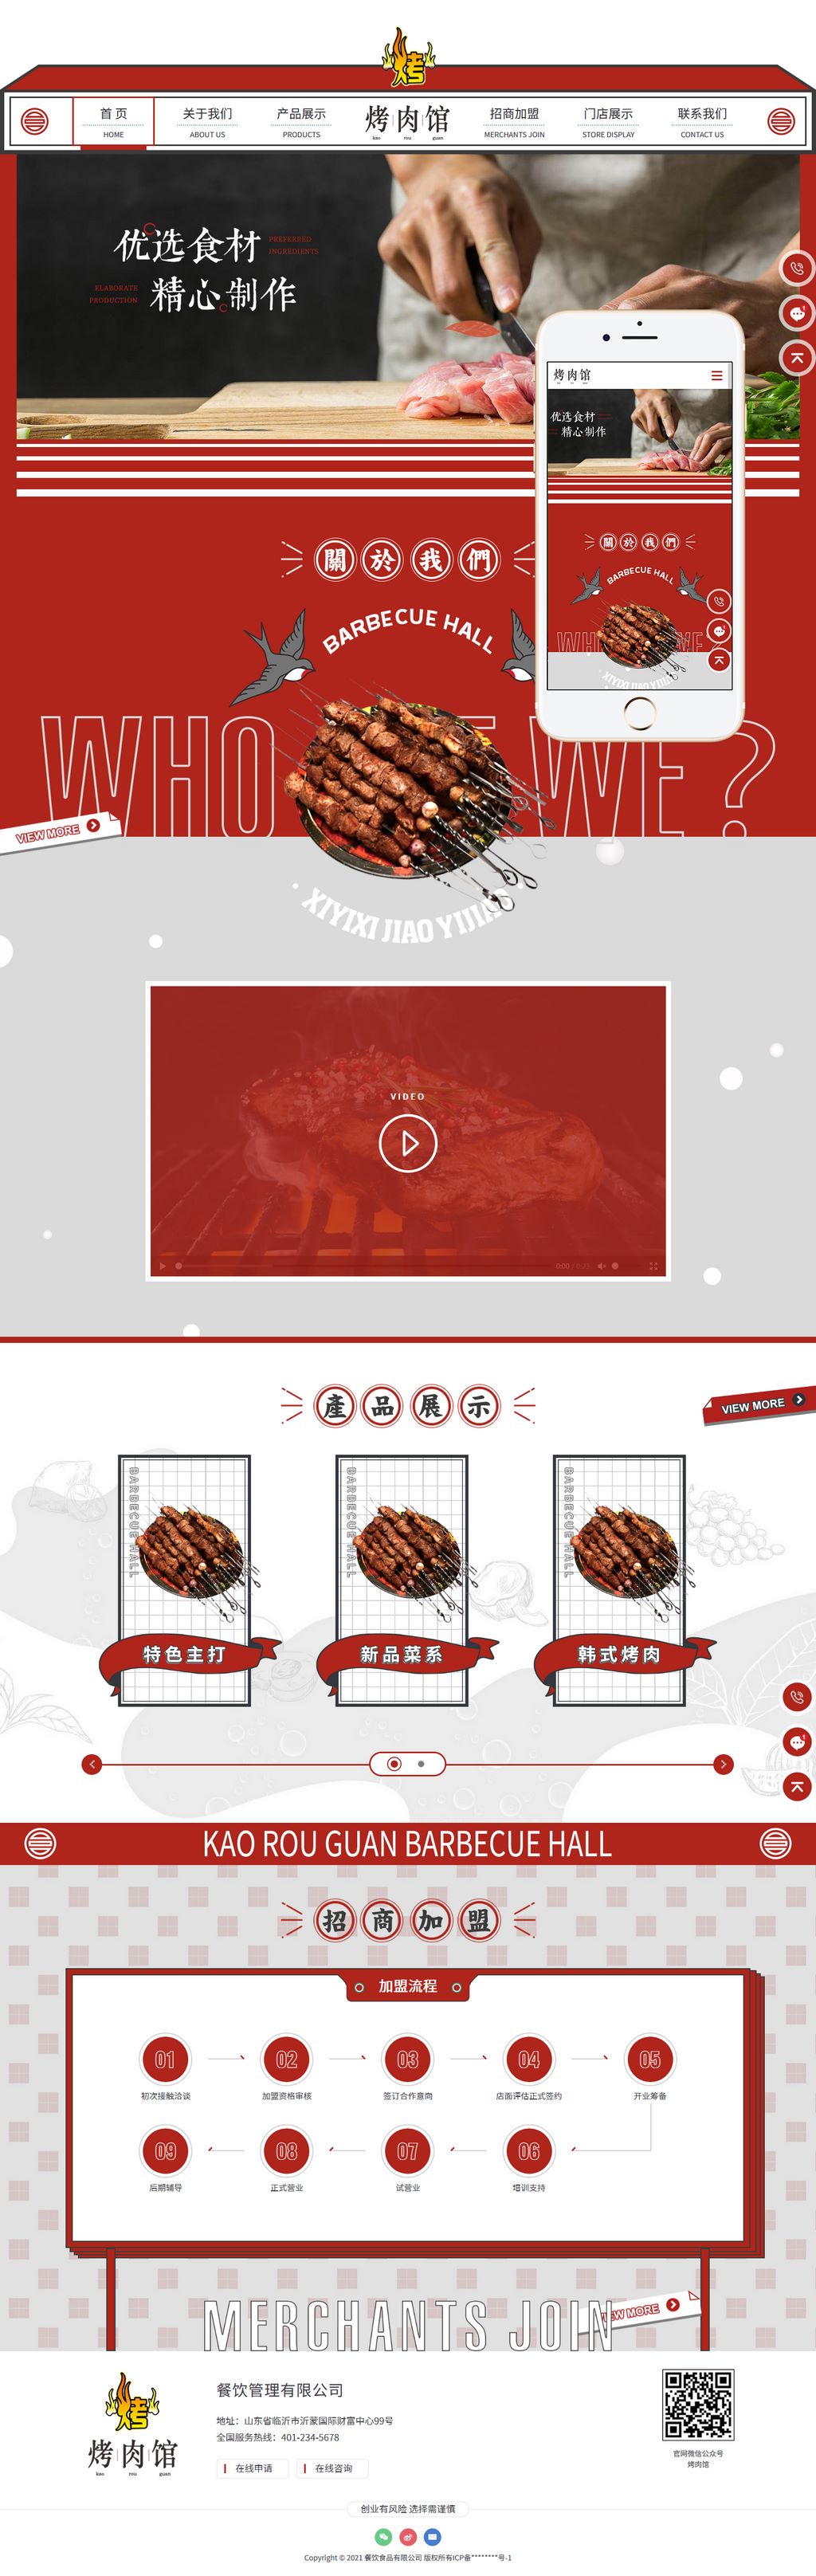 大气红色烤肉餐饮食品加盟企业网站主题模板下载演示图